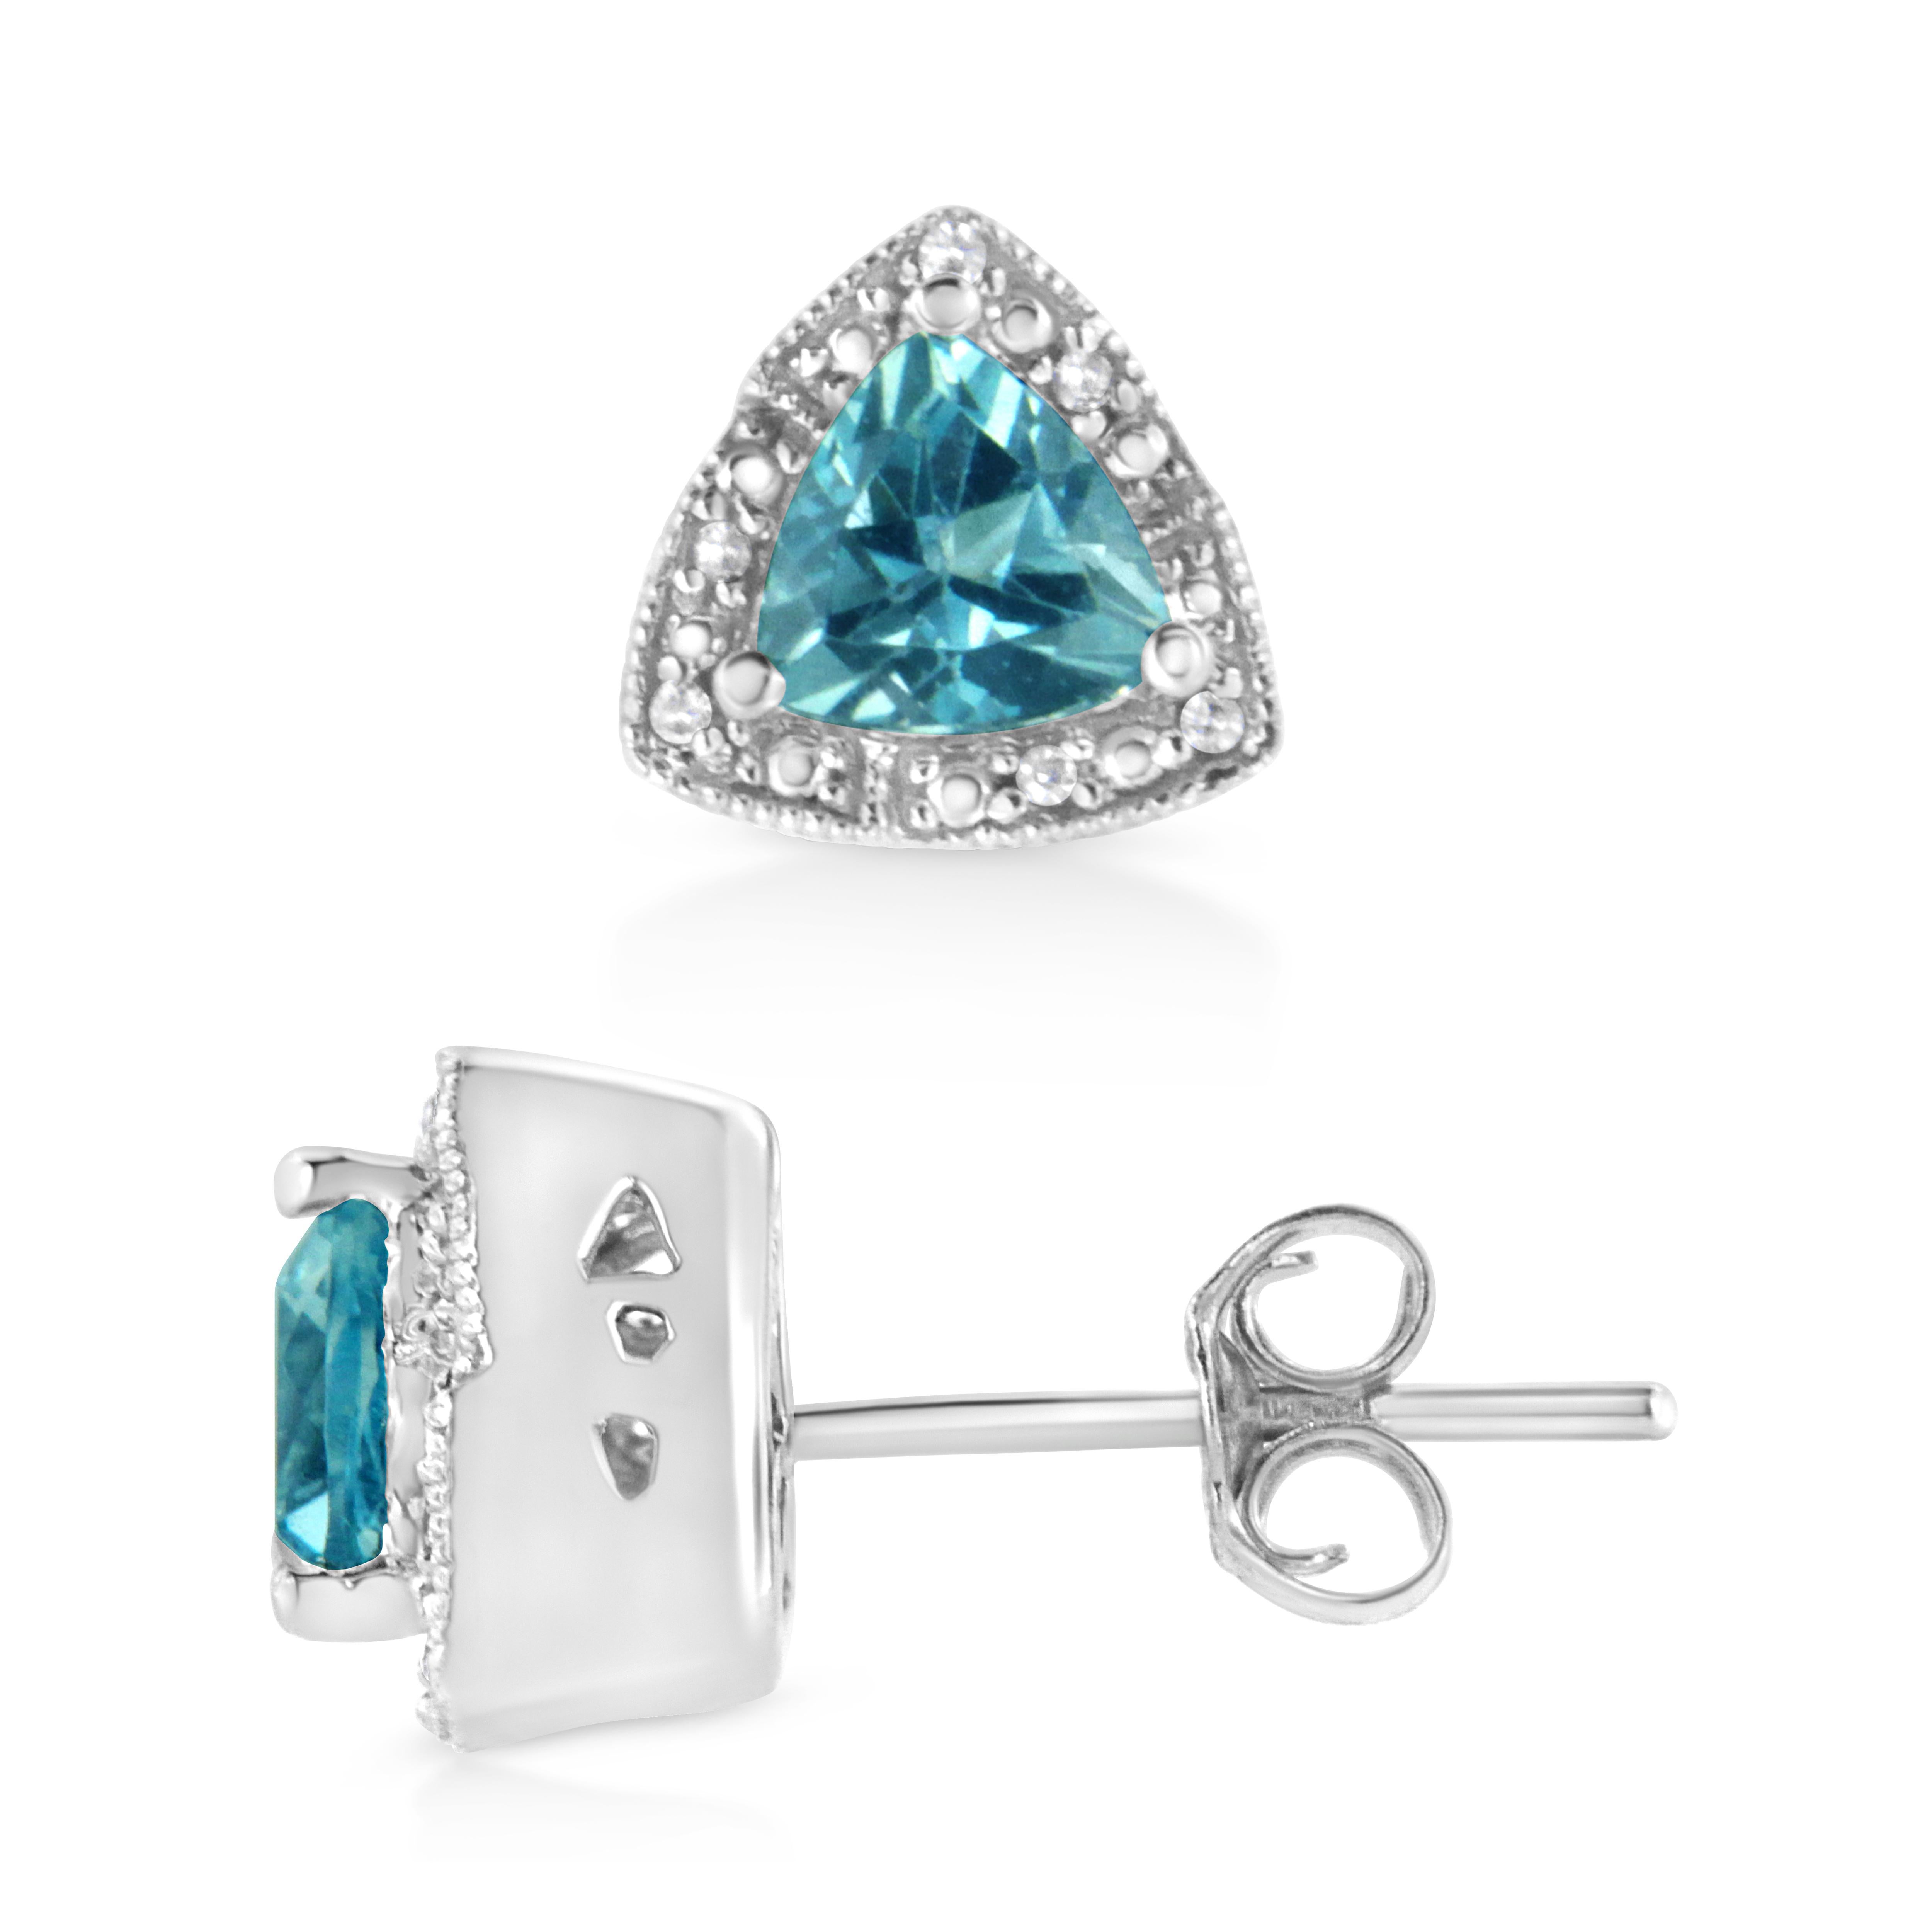 Offrez cette ravissante paire de boucles d'oreilles en topaze bleue et diamant à la personne que vous désirez. Ces boucles d'oreilles mettent en valeur une magnifique topaze bleue à trillions, sertie à la broche, entourée d'un halo de 12 diamants à